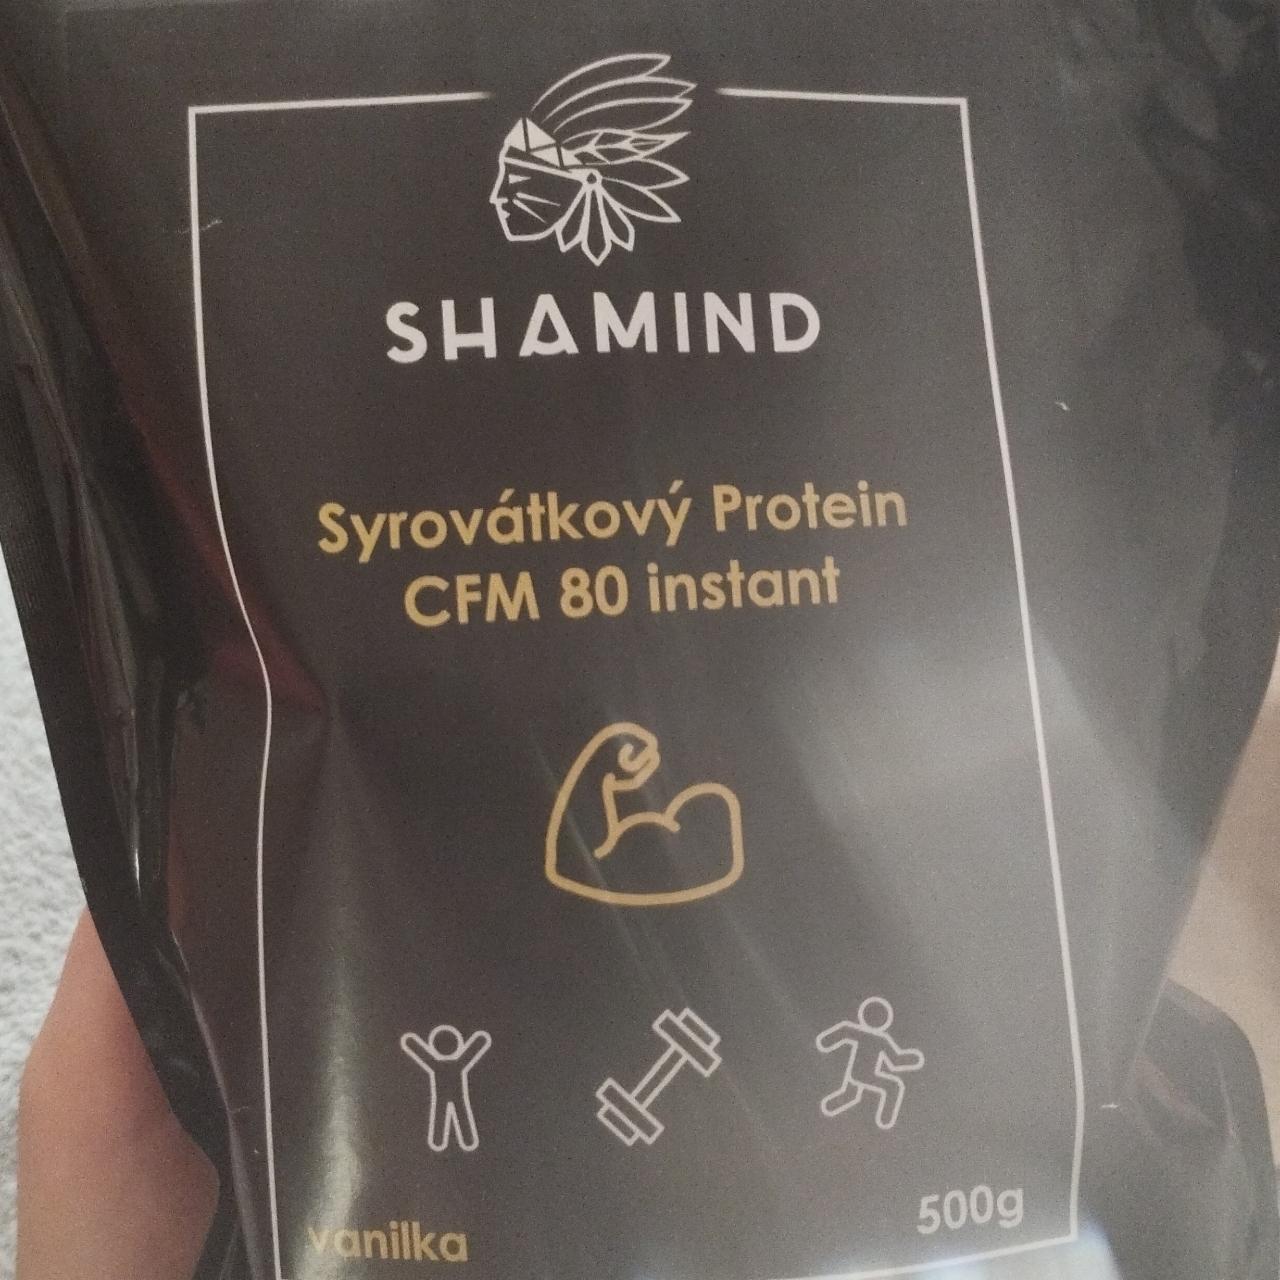 Fotografie - Syrovátkový Protein CFM 80 instant vanilka Shamind